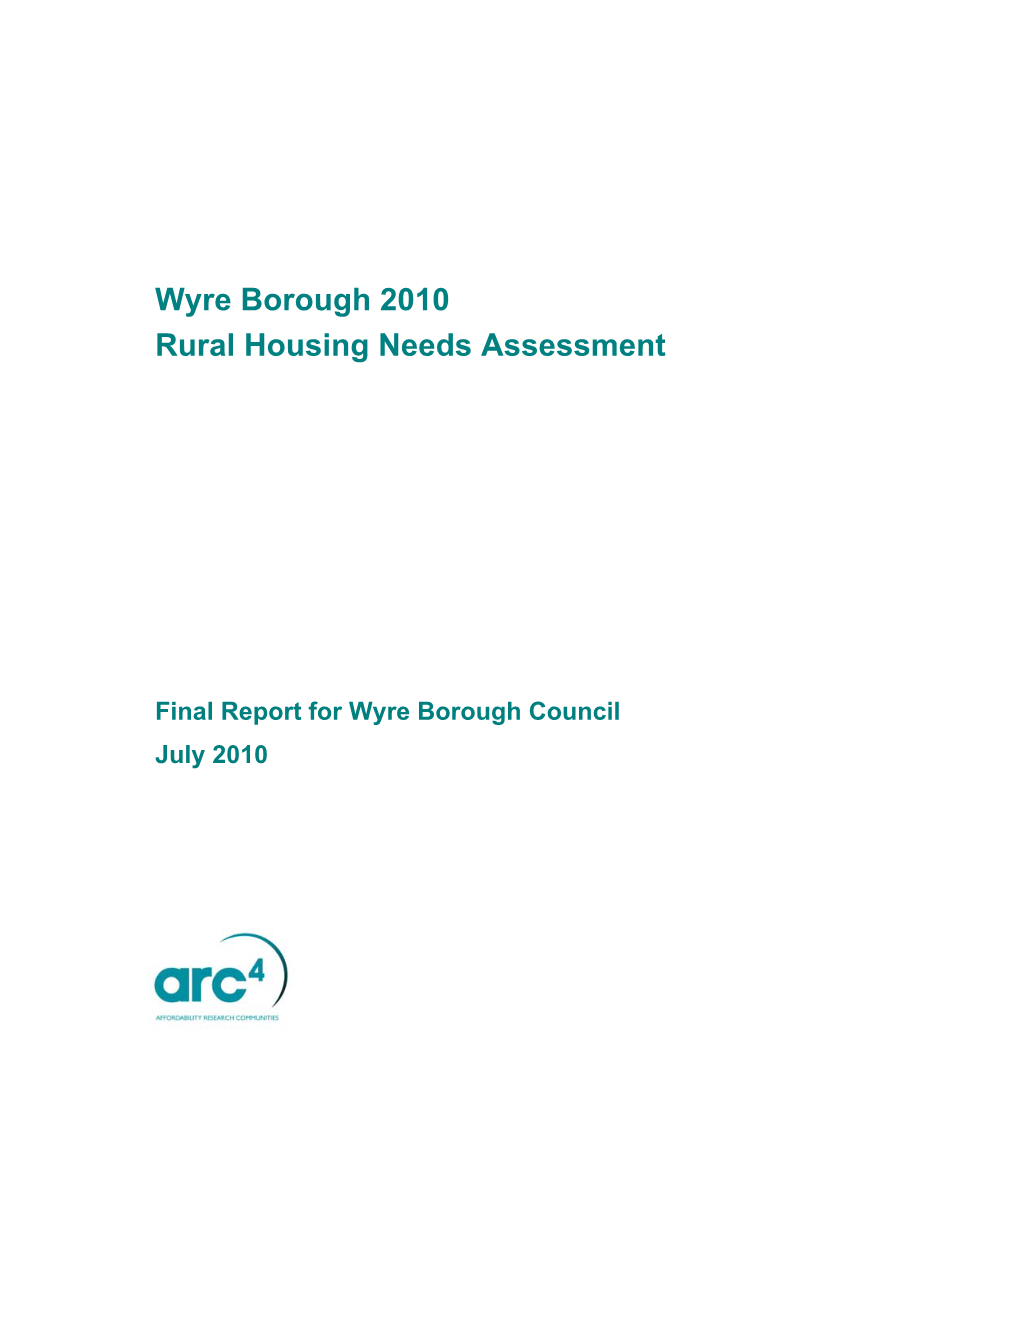 Rural Housing Needs Assessment 2010